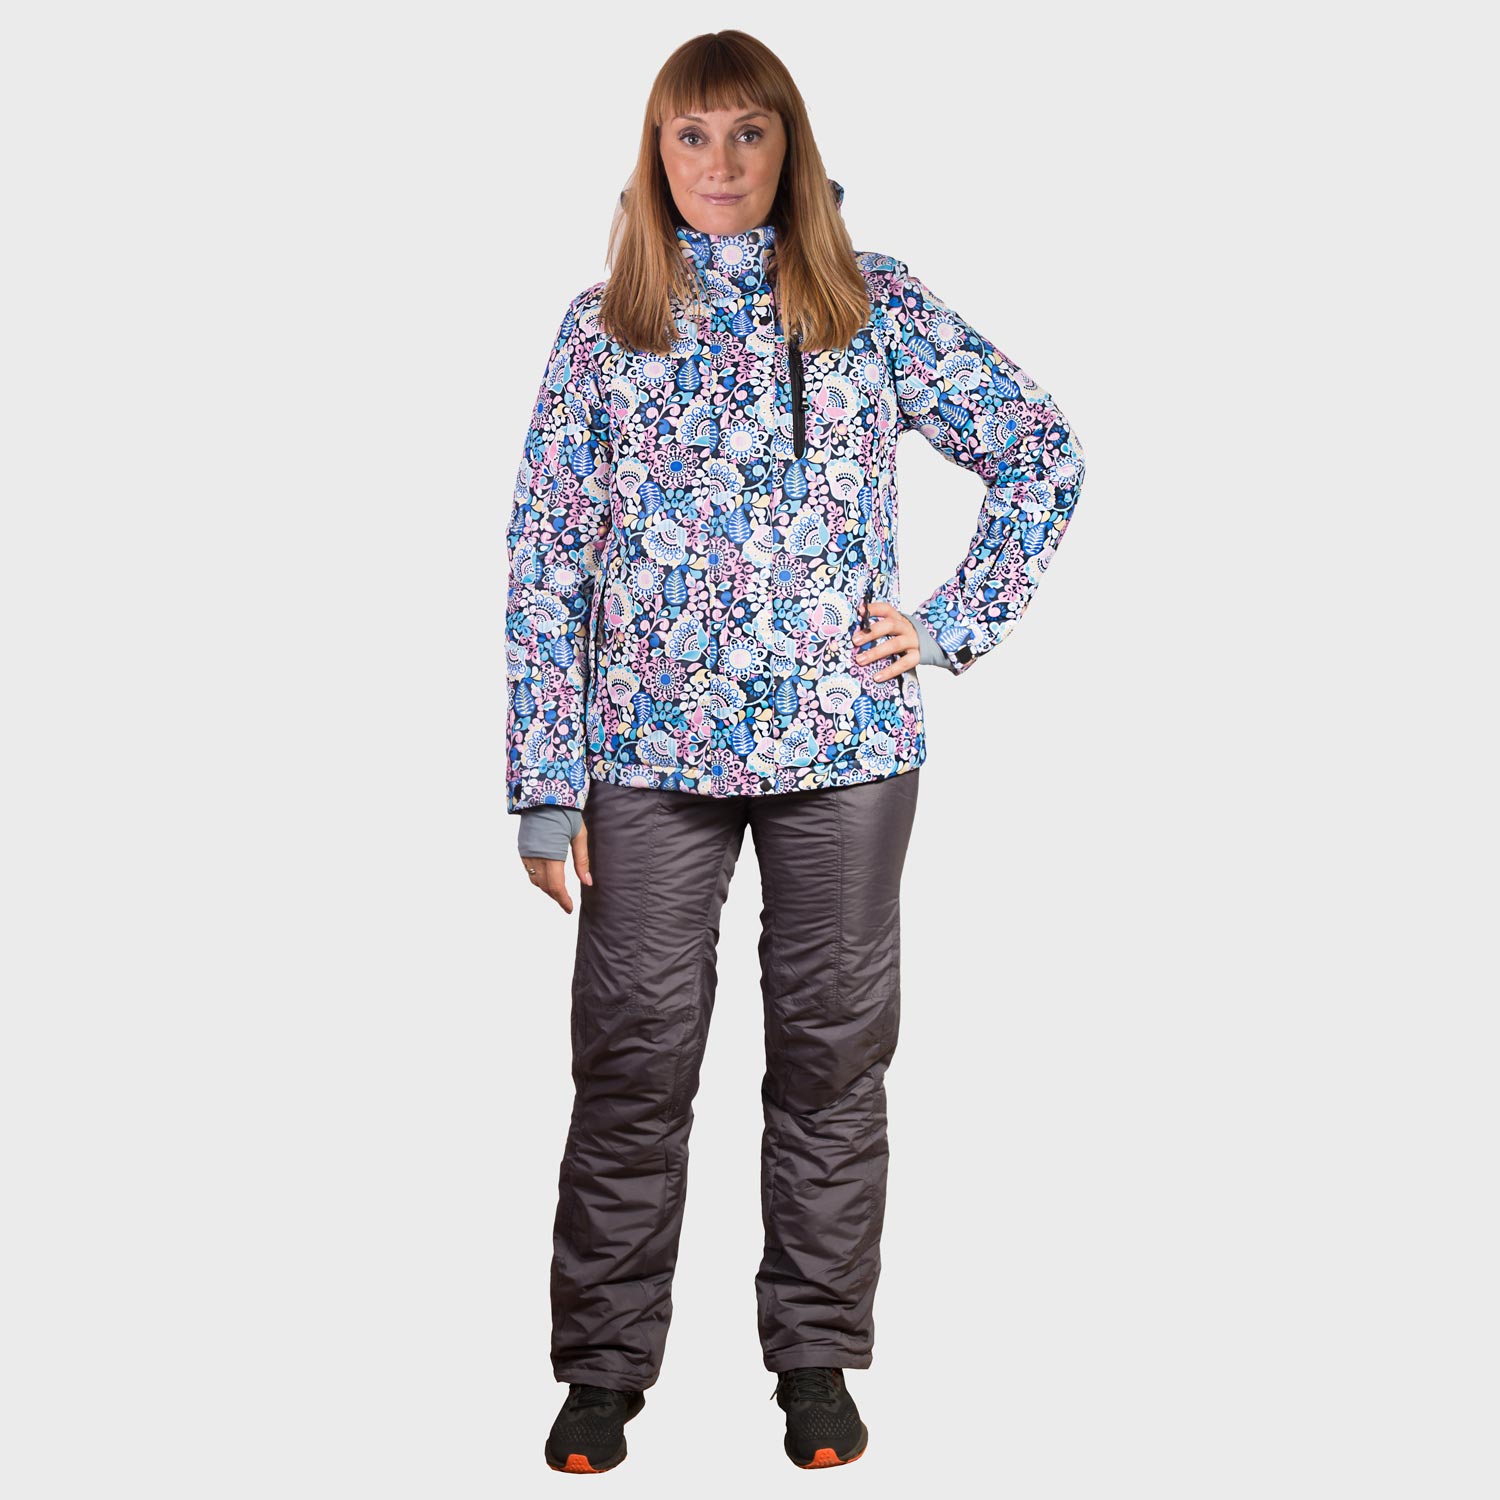 Зимняя женская горнолыжная одежда по недорогой цене в интернет магазине фото